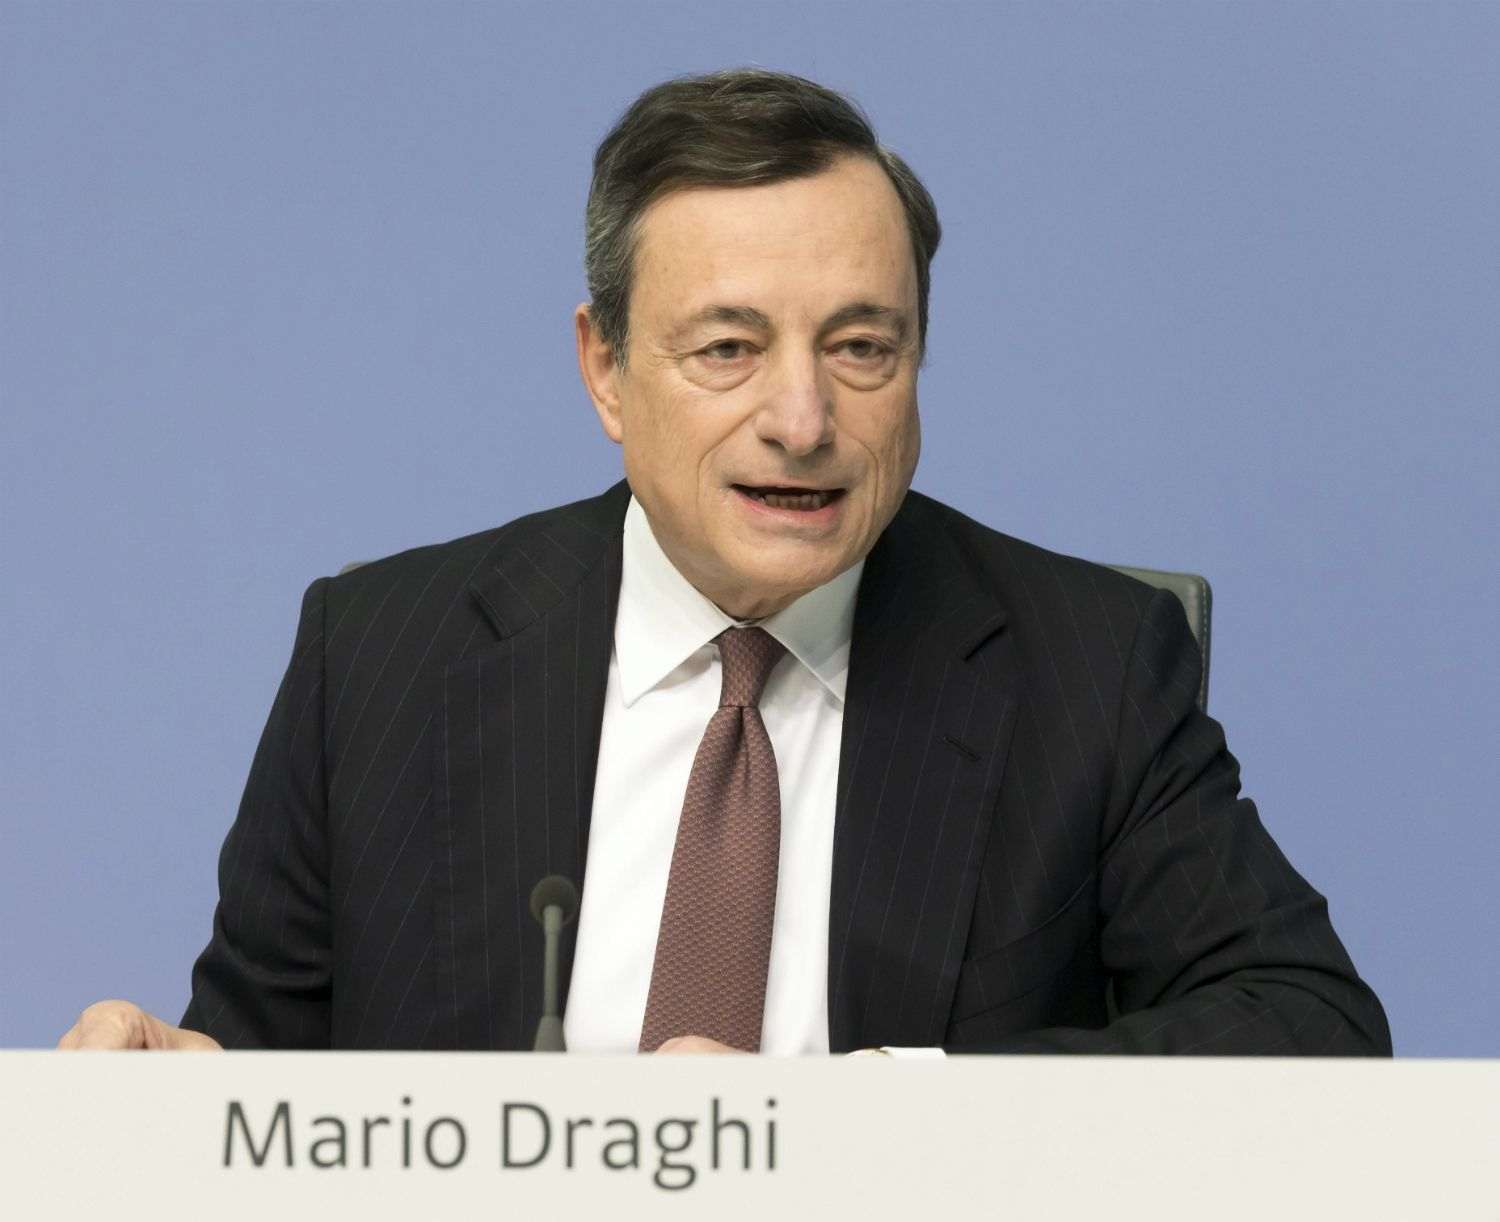 Draghi alimenta les expectatives d'una pròxima baixada de tipus del BCE